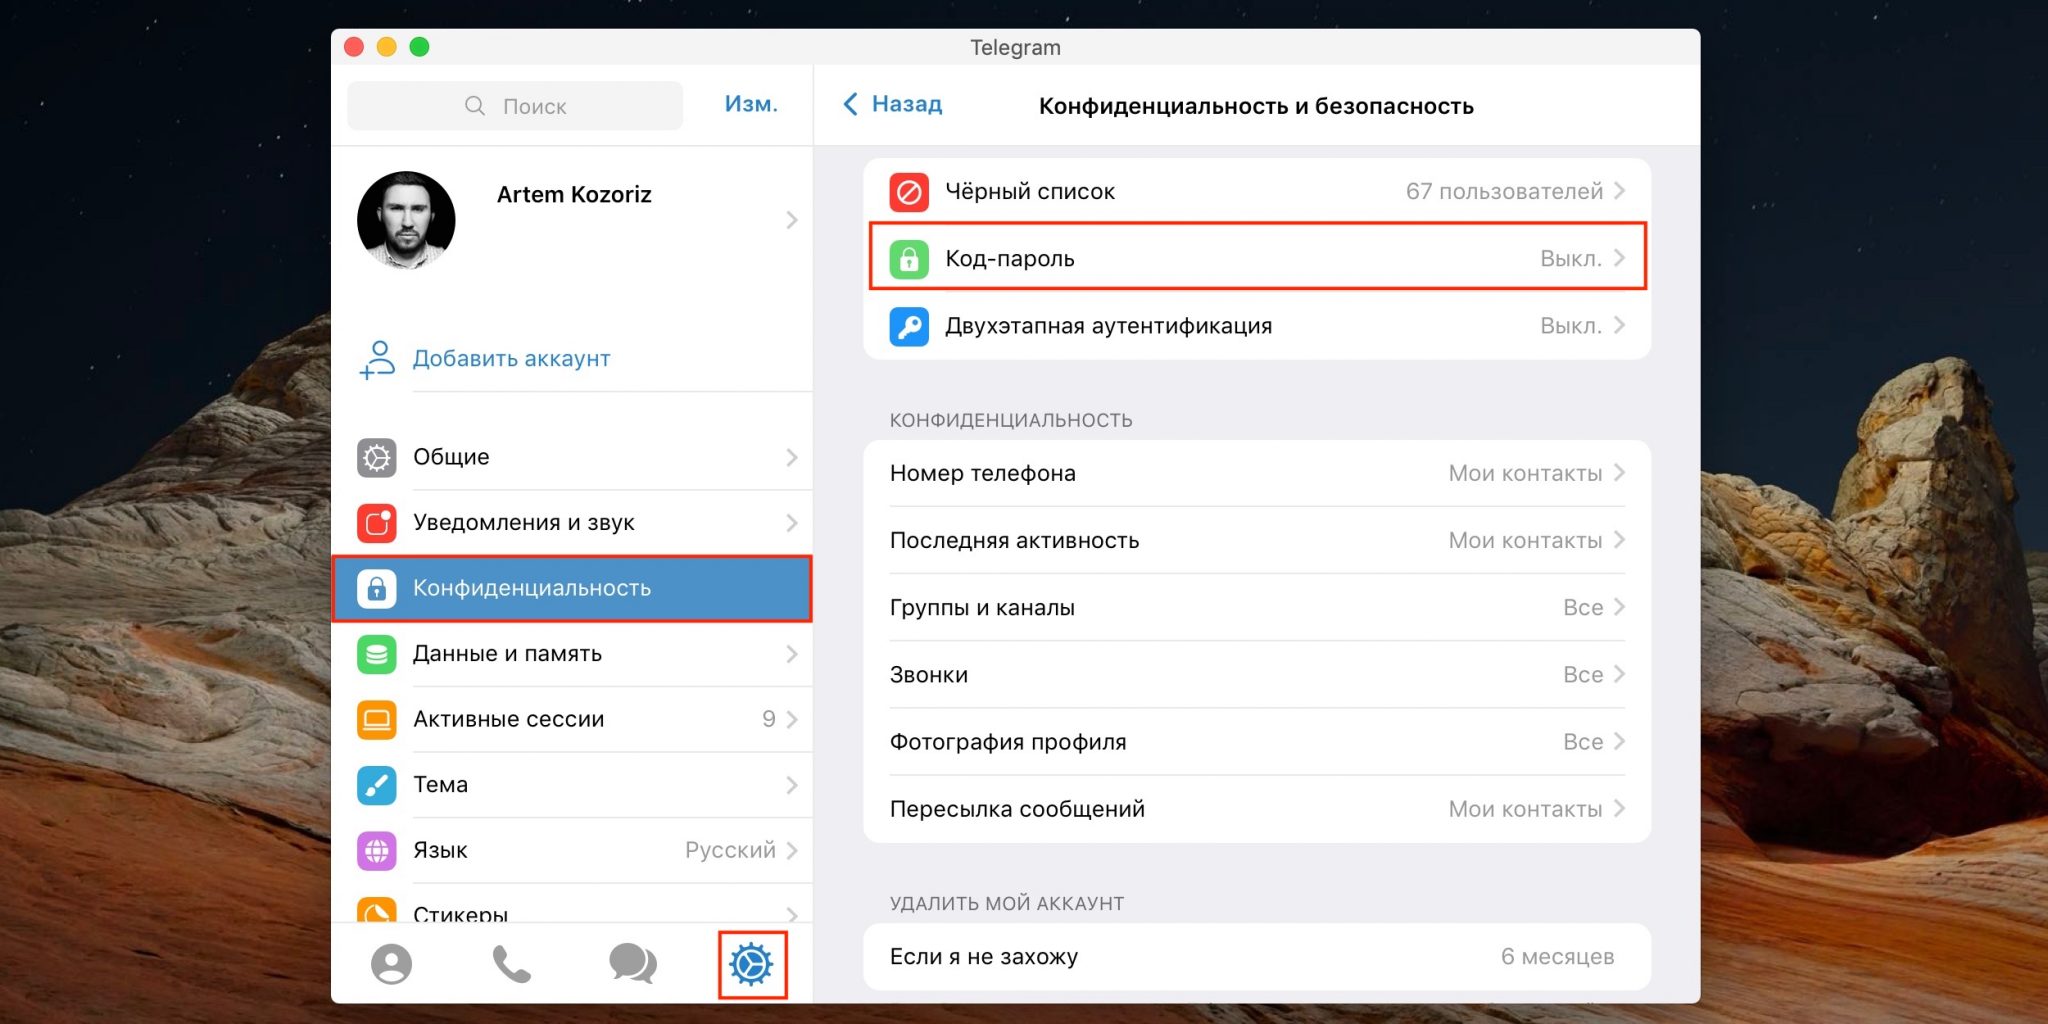 Как установить телеграмм на андроид бесплатно пошагово телефон русском языке фото 90